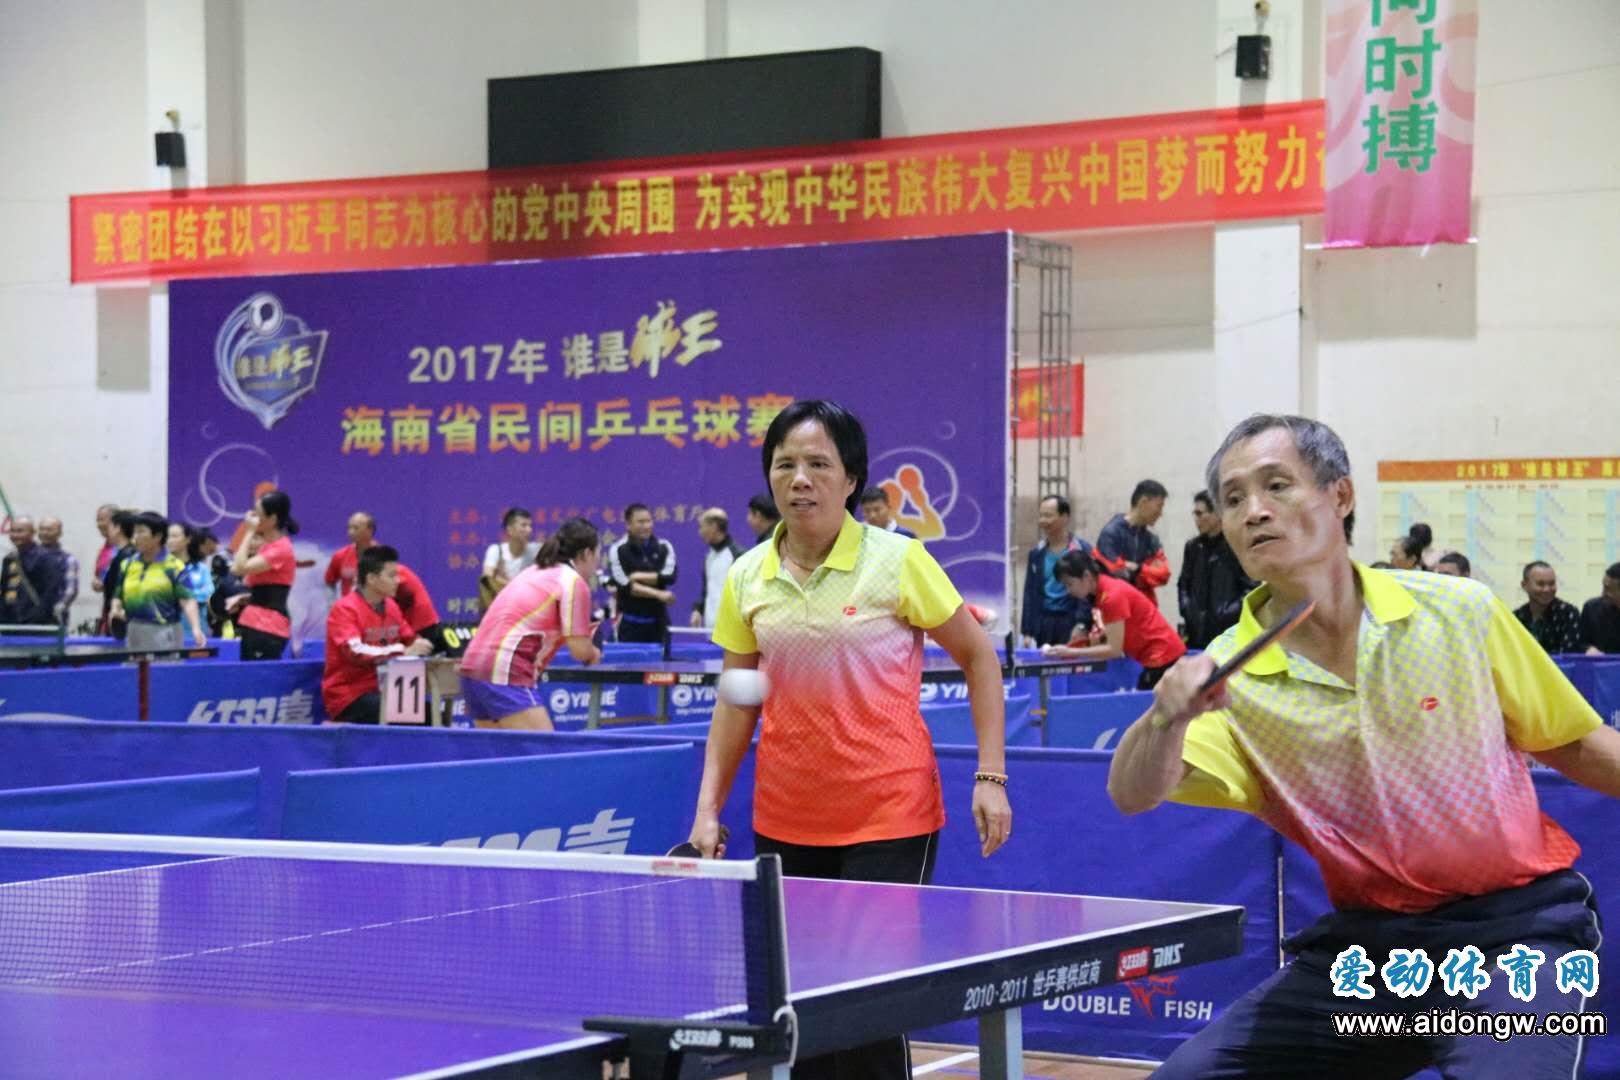 2017年“谁是球王”海南省民间乒乓球赛开拍 近200多名选手参加比赛